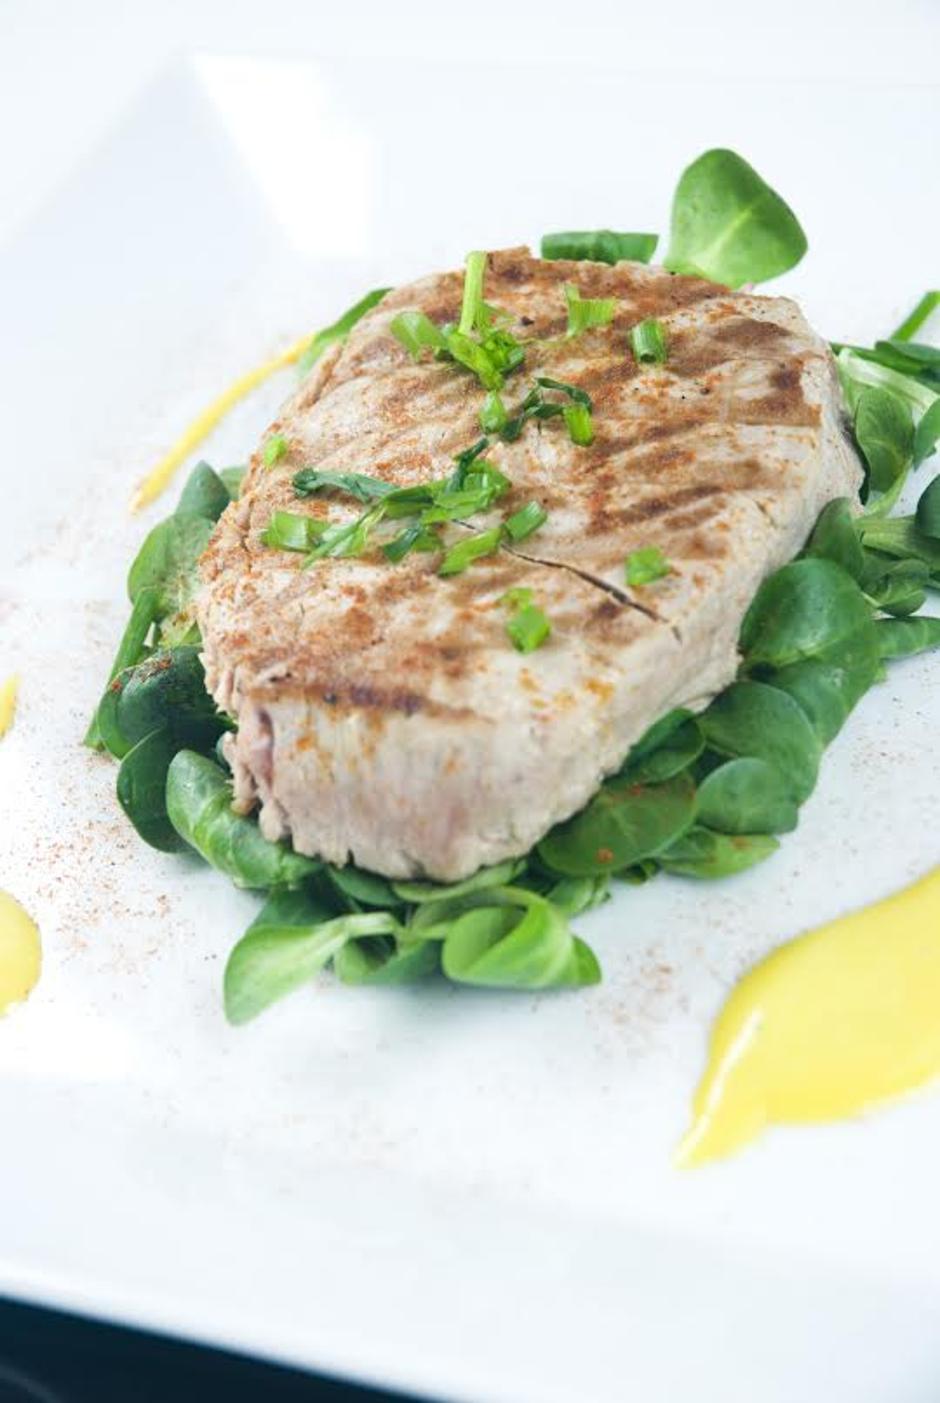 Tuna sa salatom od začinskog bilja | Author: Thinkstock